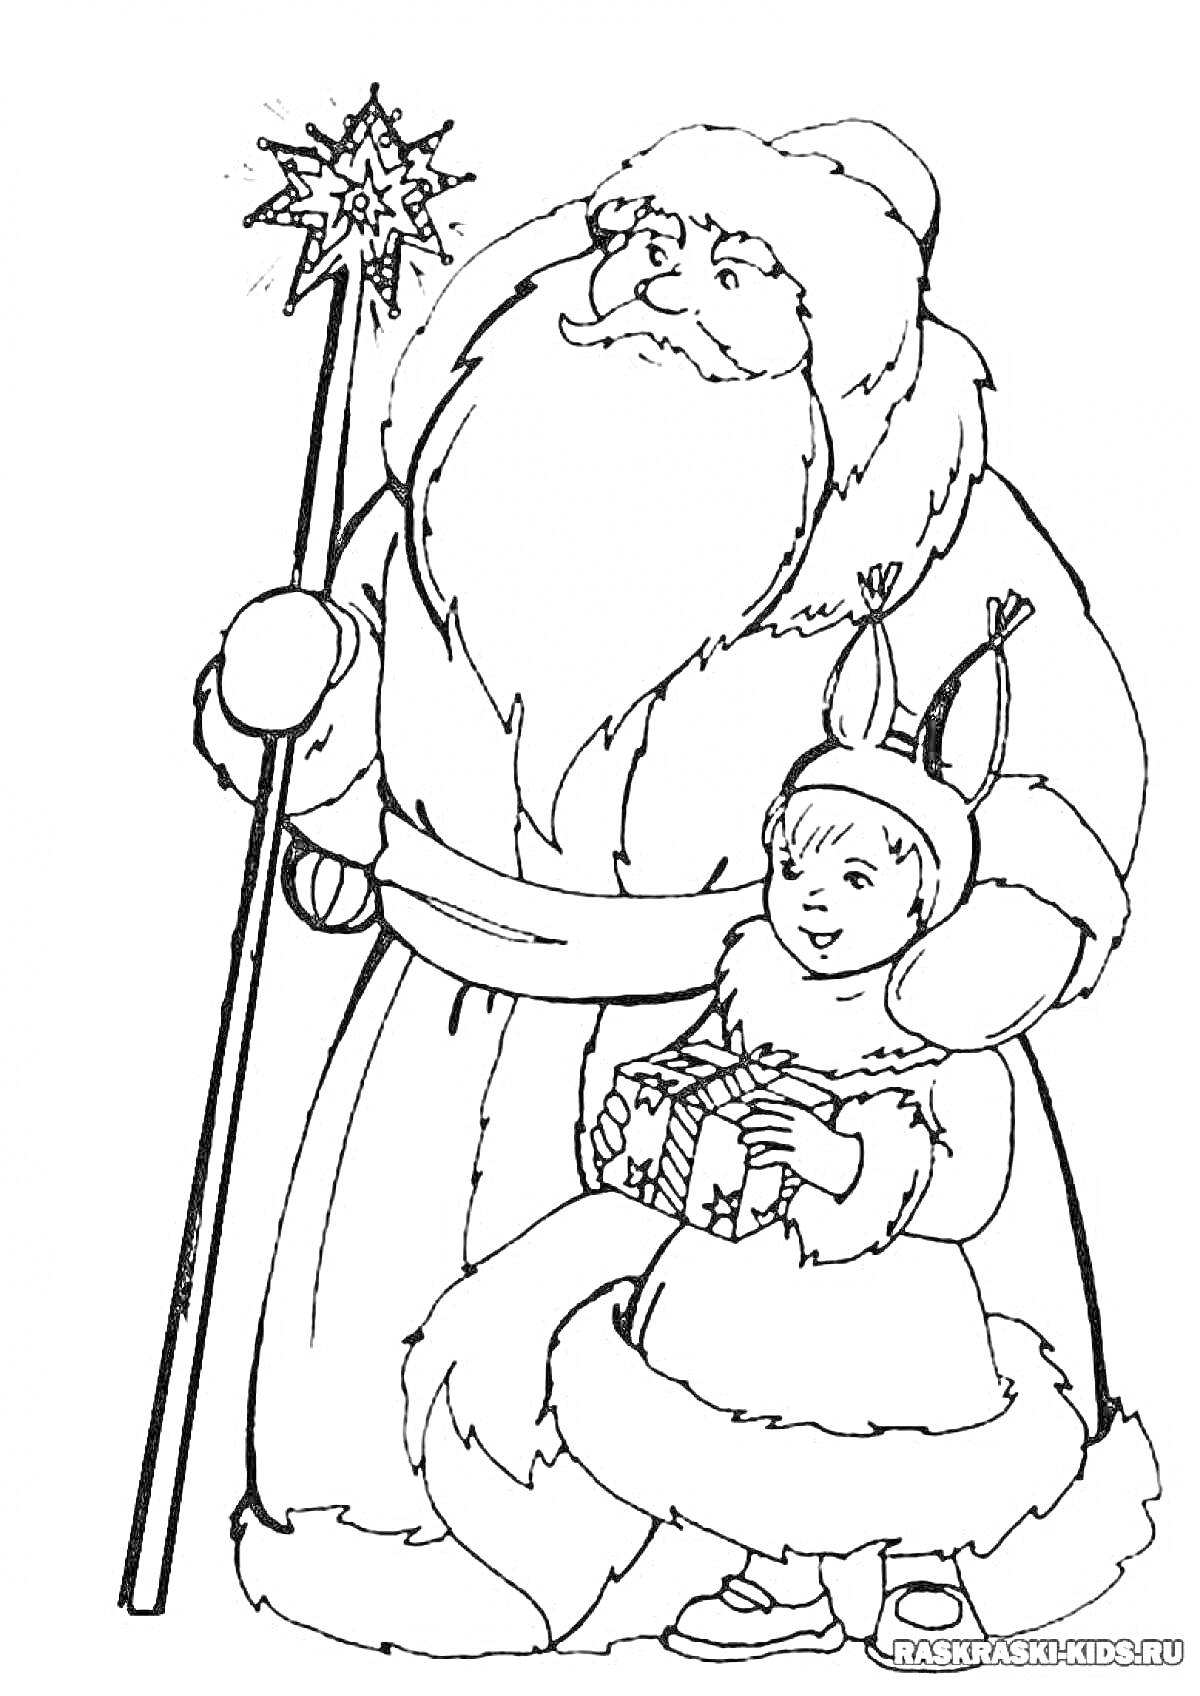 Раскраска Дед Мороз и Снегурочка с посохом и подарком